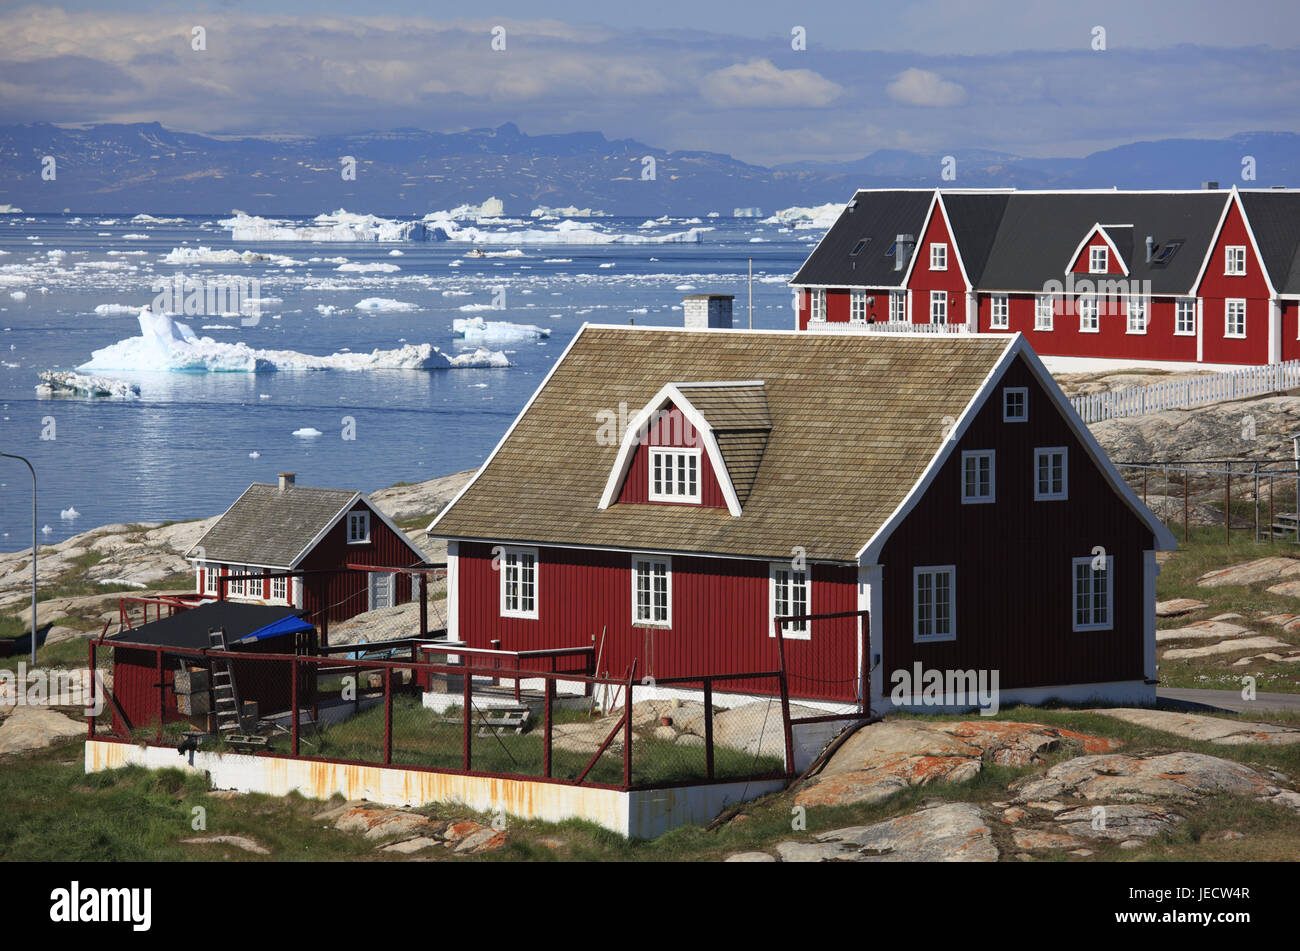 La Groenlandia, Discoteca Bay, Ilulissat, fiordo, case in legno, visualizzare, iceberg, Groenlandia occidentale, rive, costa, fuori, deserte, acqua, sul mare Artico, ghiaccio, ghiaccio di moto, cambiamenti climatici, case, case, rosso, architettura, tipicamente per paese, Foto Stock